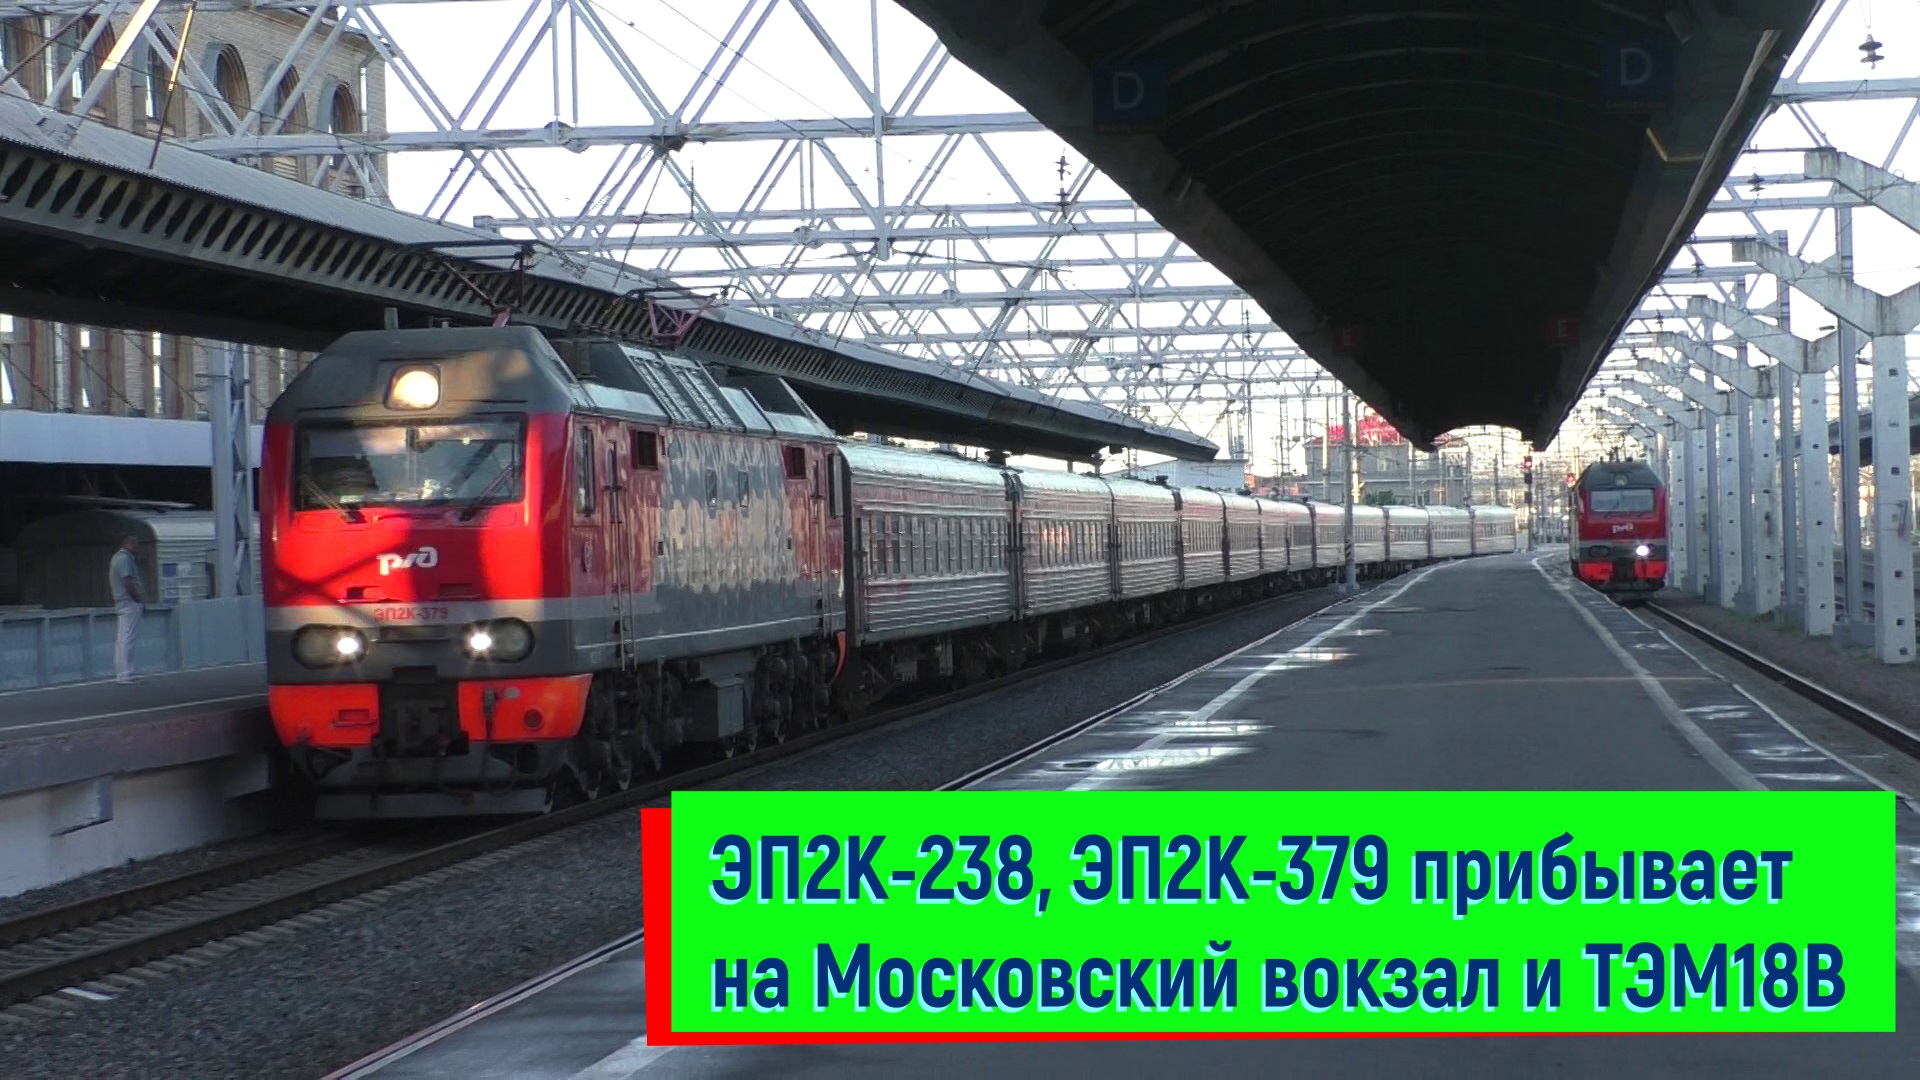 ЭП2К-238, ЭП2К-379 прибывает на Московский вокзал и ТЭМ18В | EP2K-238, EP2K-379 and TEM18V